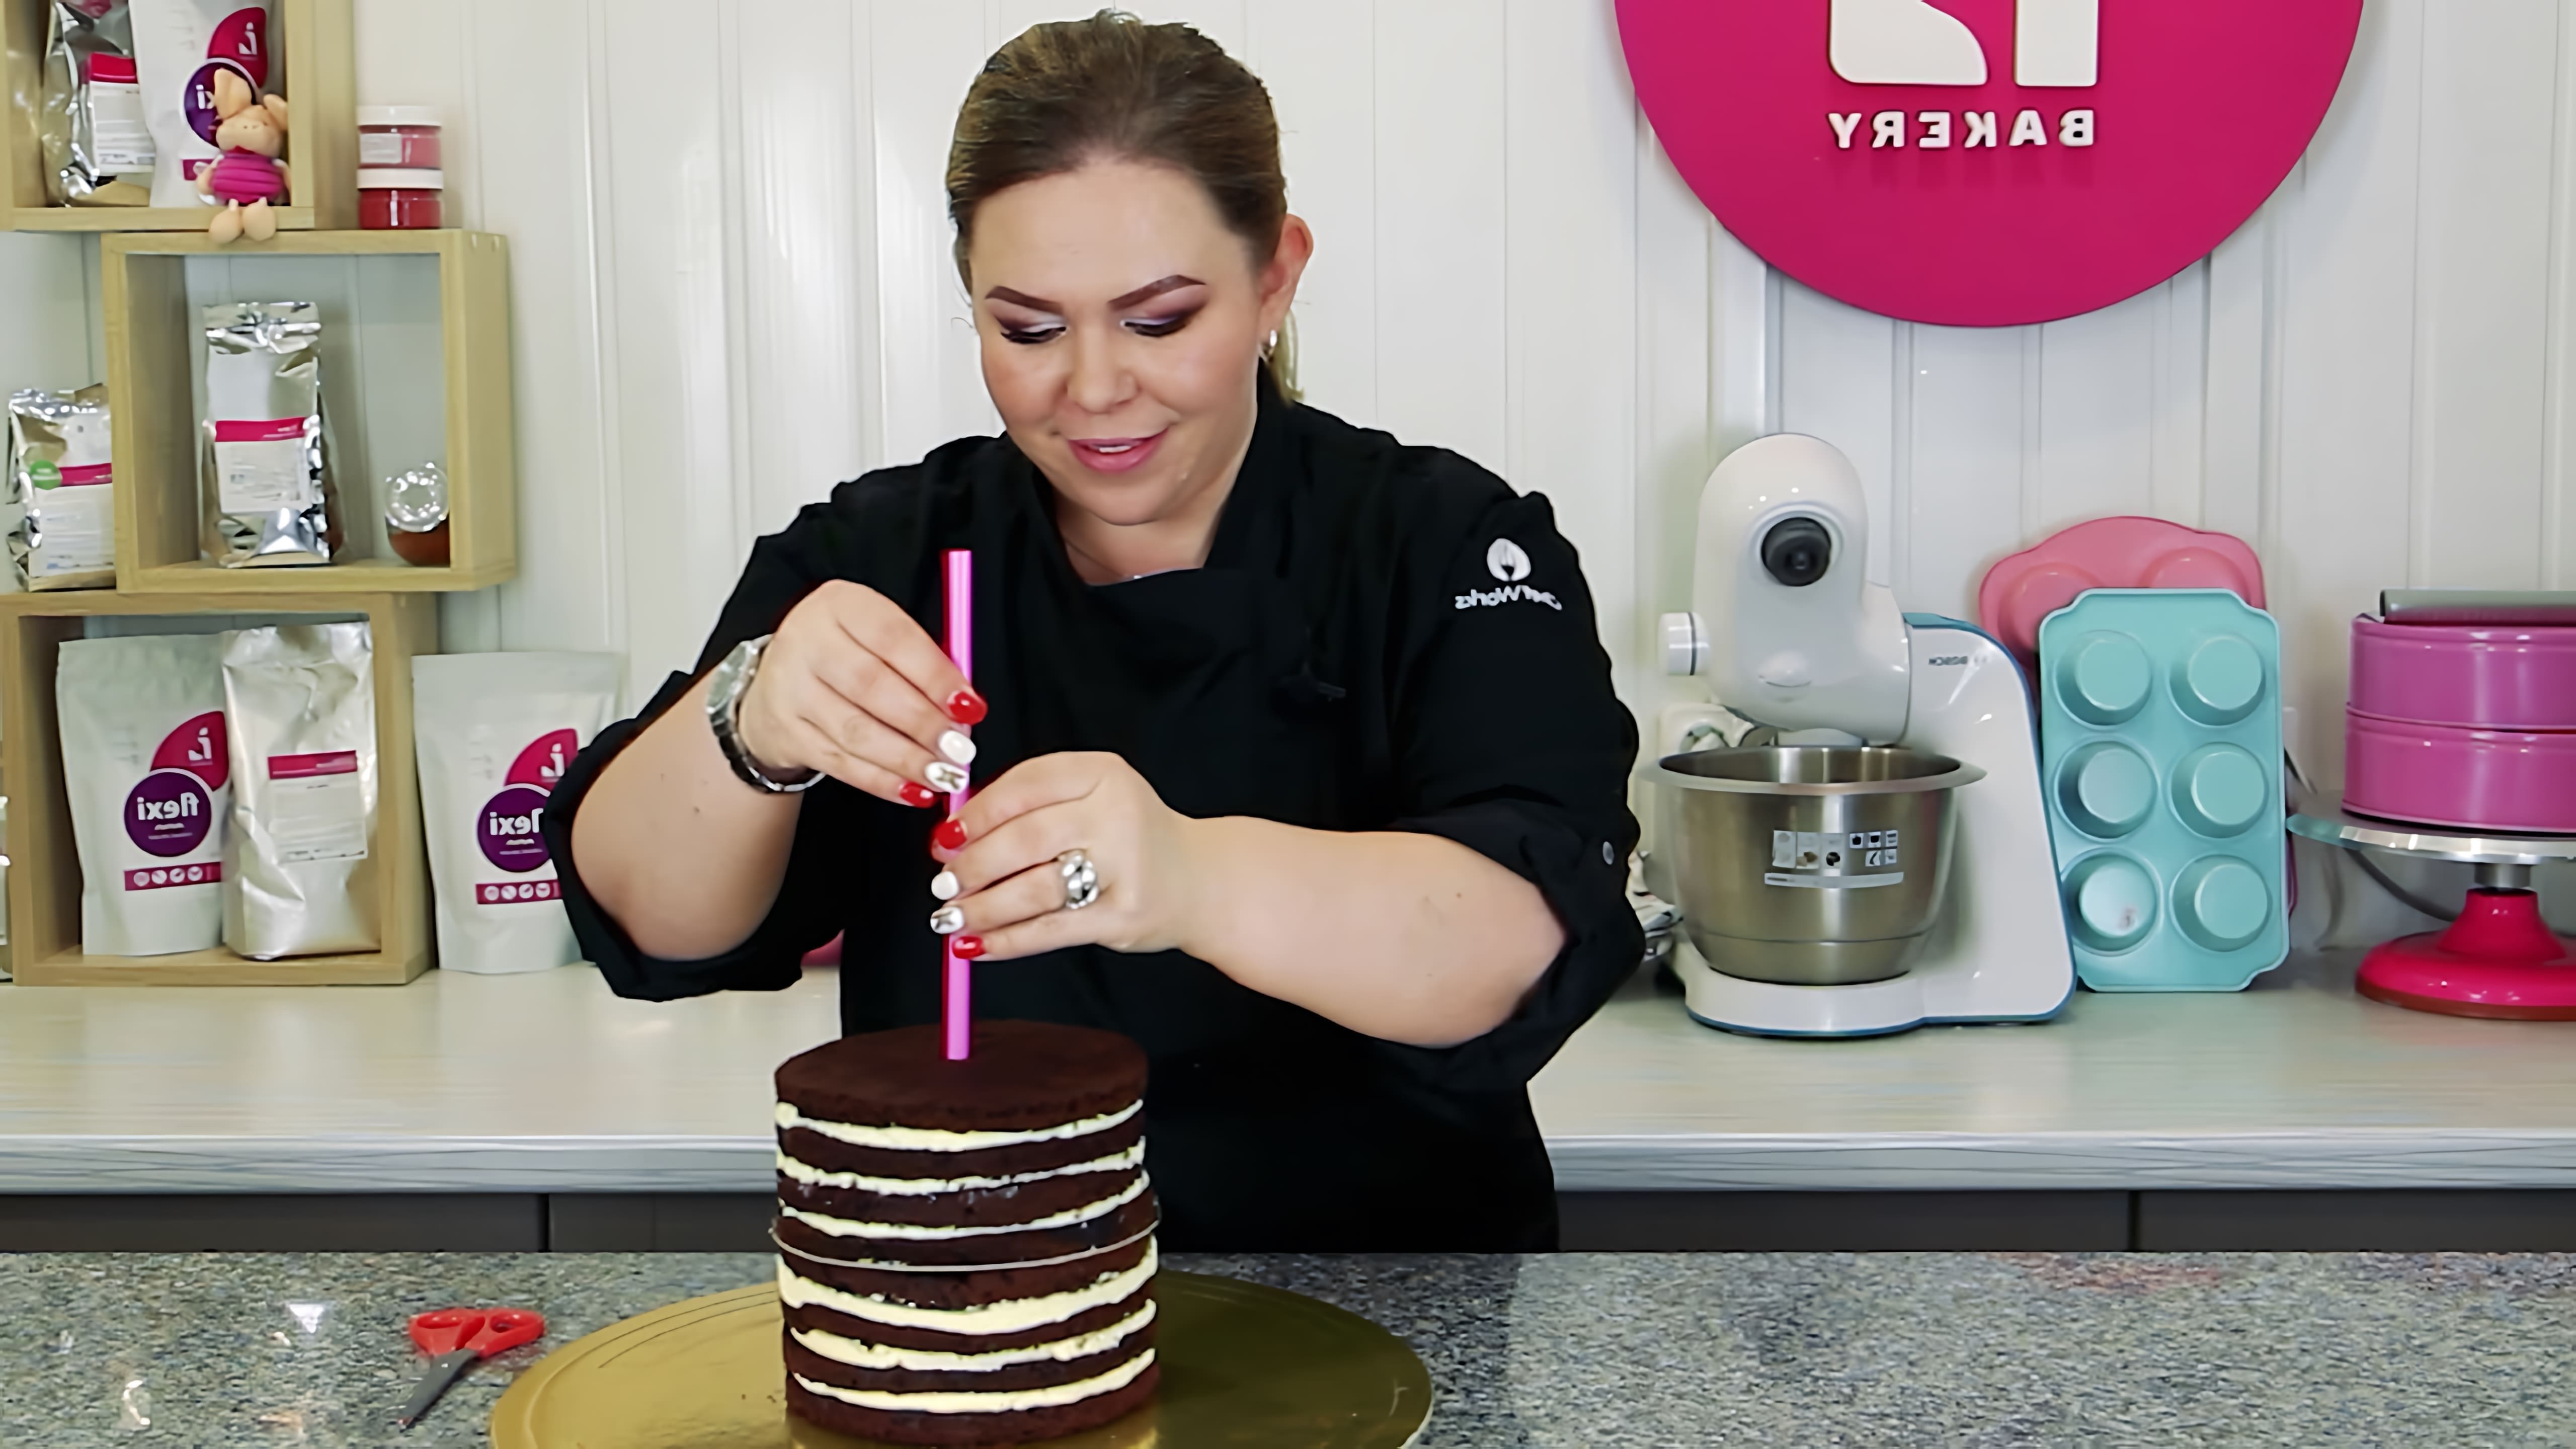 В этом видео демонстрируется процесс сборки двухъярусного торта